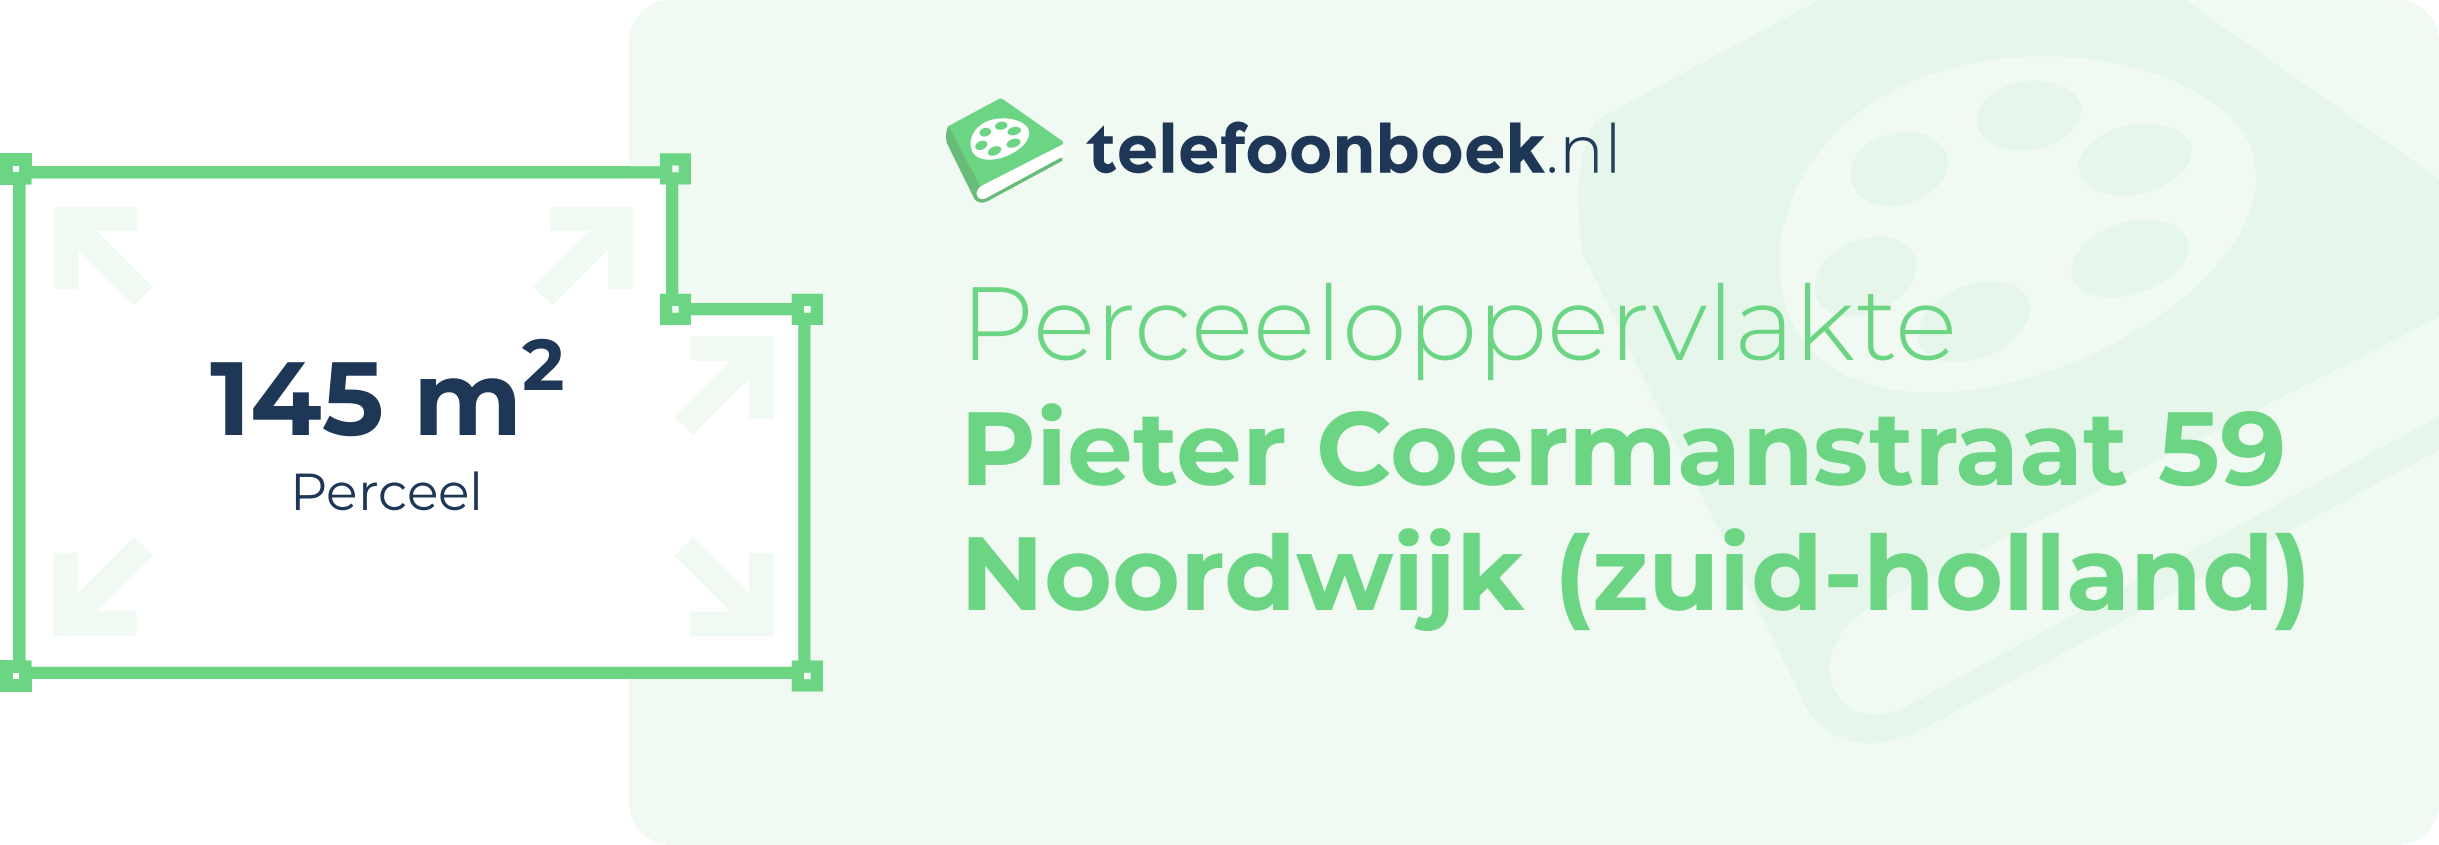 Perceeloppervlakte Pieter Coermanstraat 59 Noordwijk (Zuid-Holland)